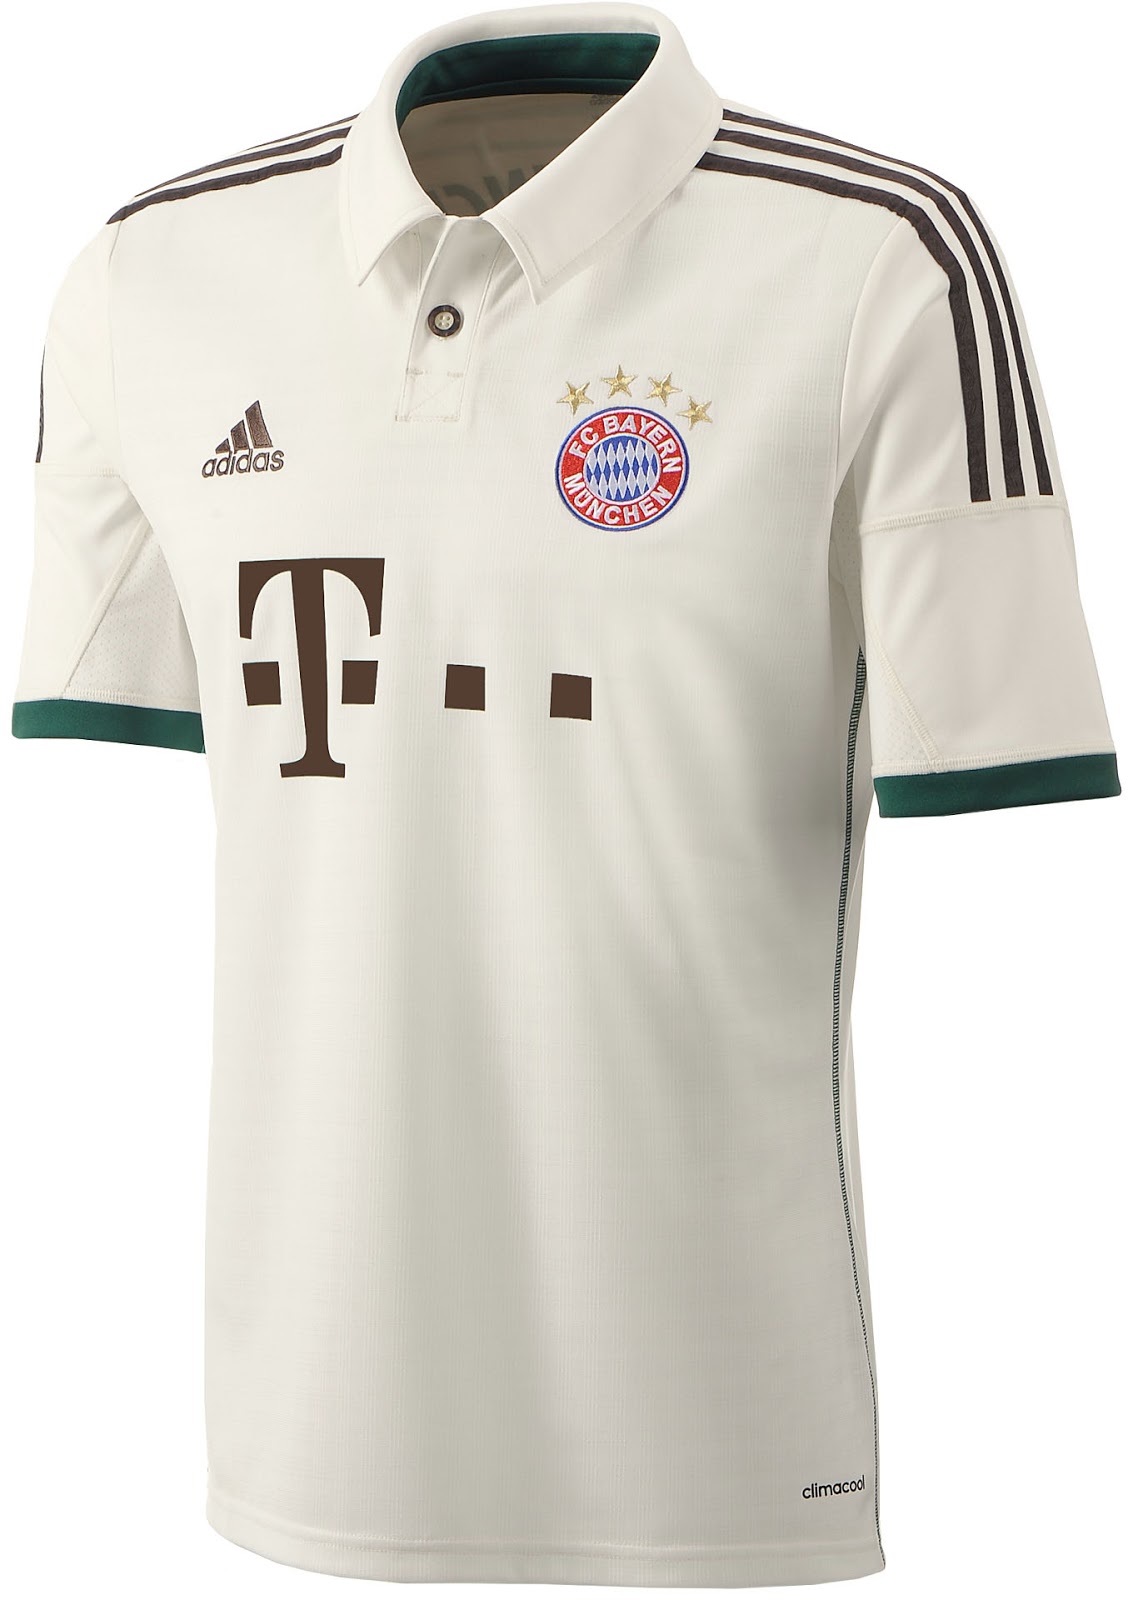 Away Bayern Munich 20/21 Kit & Football Shirt History